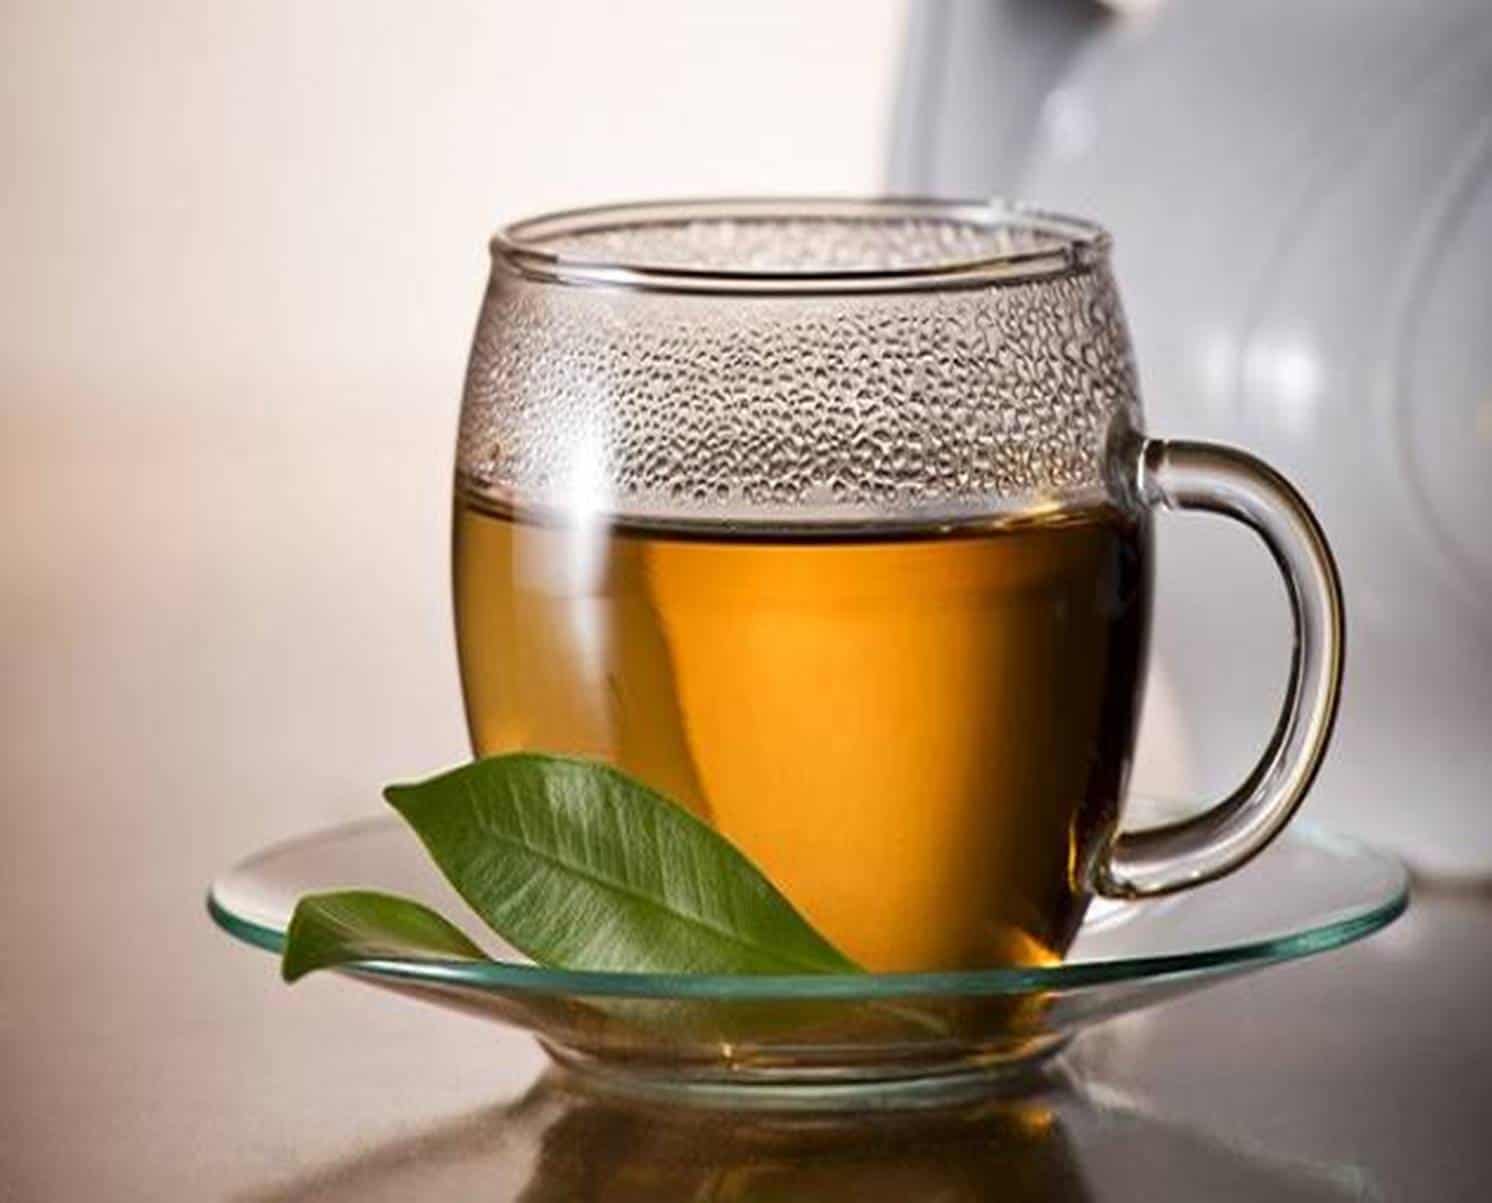 Mistura potente de folhas faz novo chá para emagrecer: saiba fazer